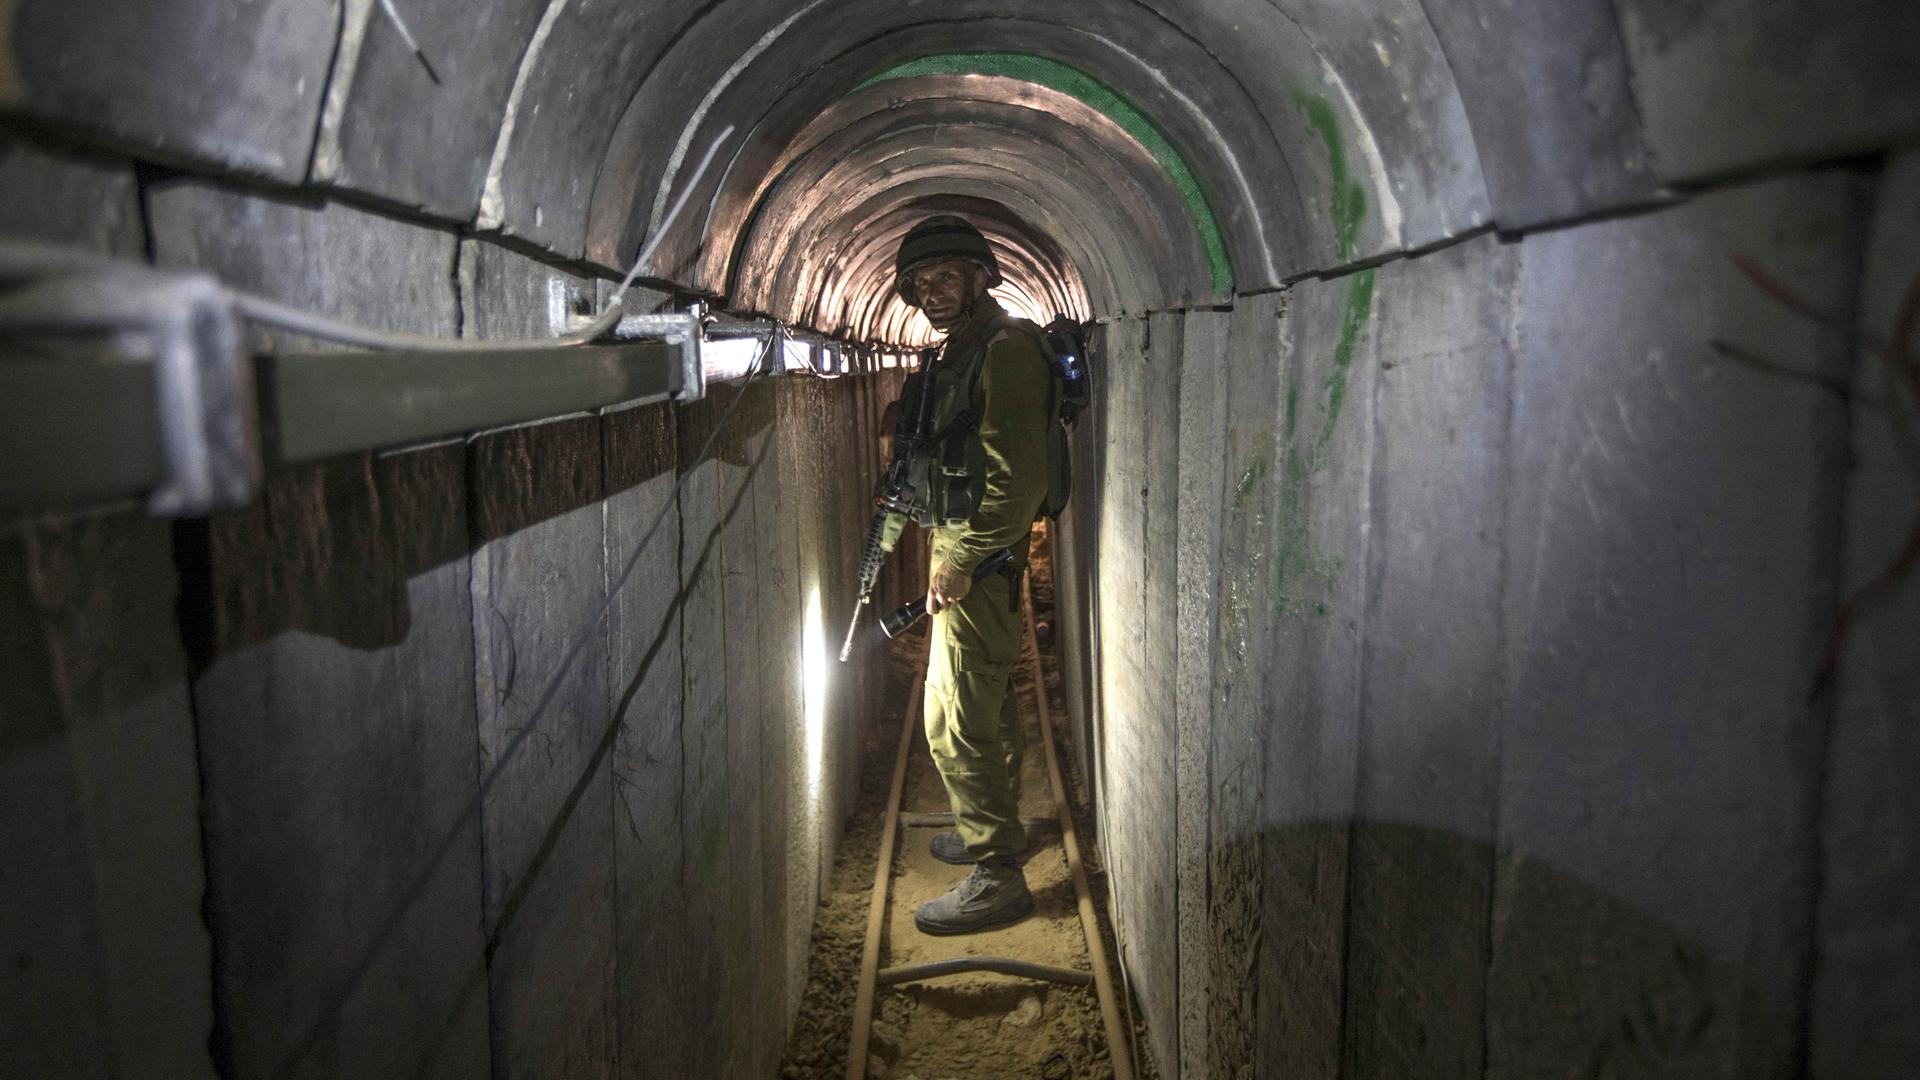 Ein israelischer Soldat führt im Jahr 2012 Journalisten durch einen Tunnel an der Grenze zwischen Israel und Gazastreifen, der angeblich von militanten Palästinensern für grenzüberschreitende Angriffe genutzt wird.